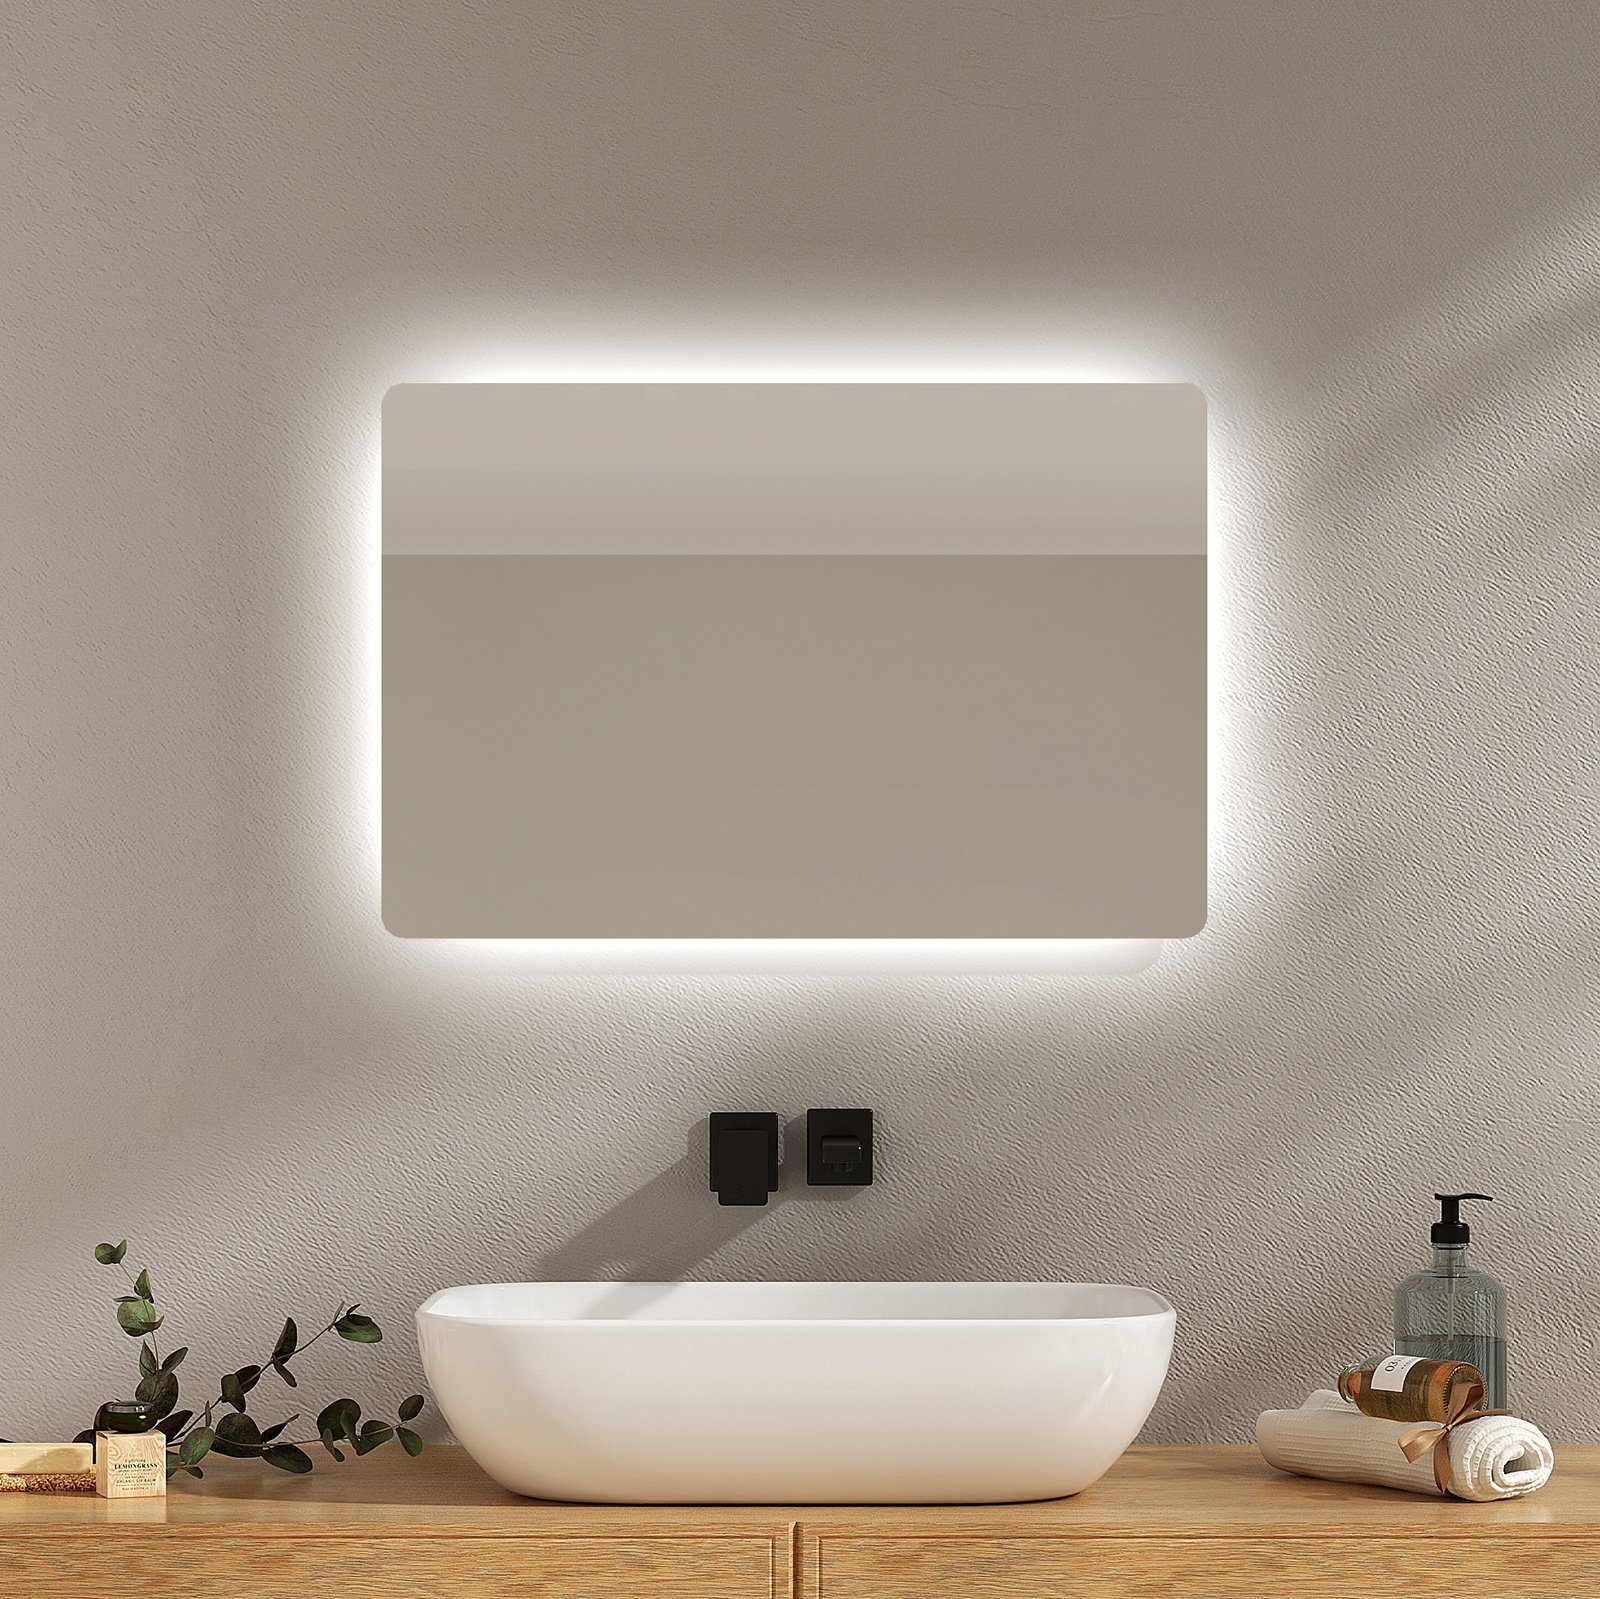 EMKE LED-Lichtspiegel Wandspiegel mit Beleuchtung Warmweiß/Kaltweiß, Klein 2 Badspiegel mit Knopfschalter, Lichtfarbe LED IP44 Beschlagfrei